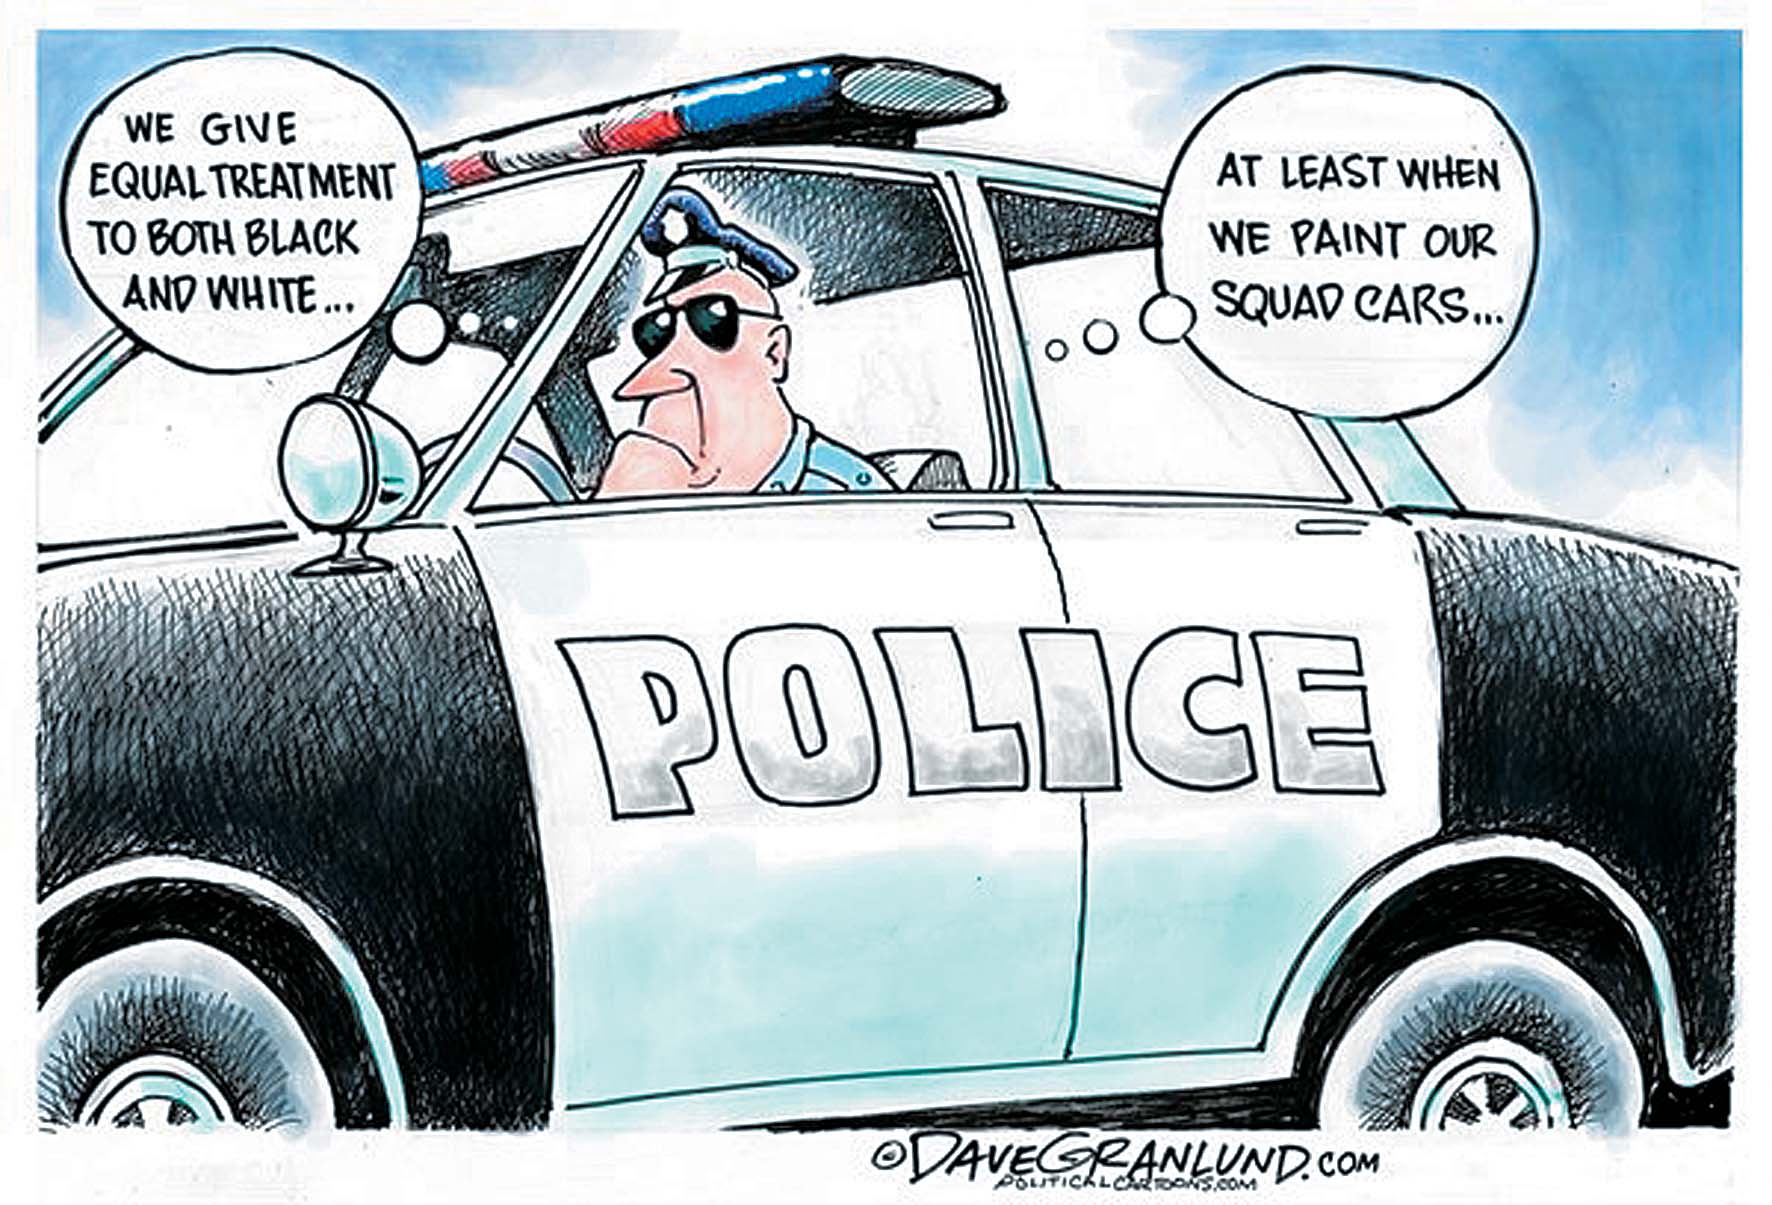 색깔 차별 않는다는 경찰